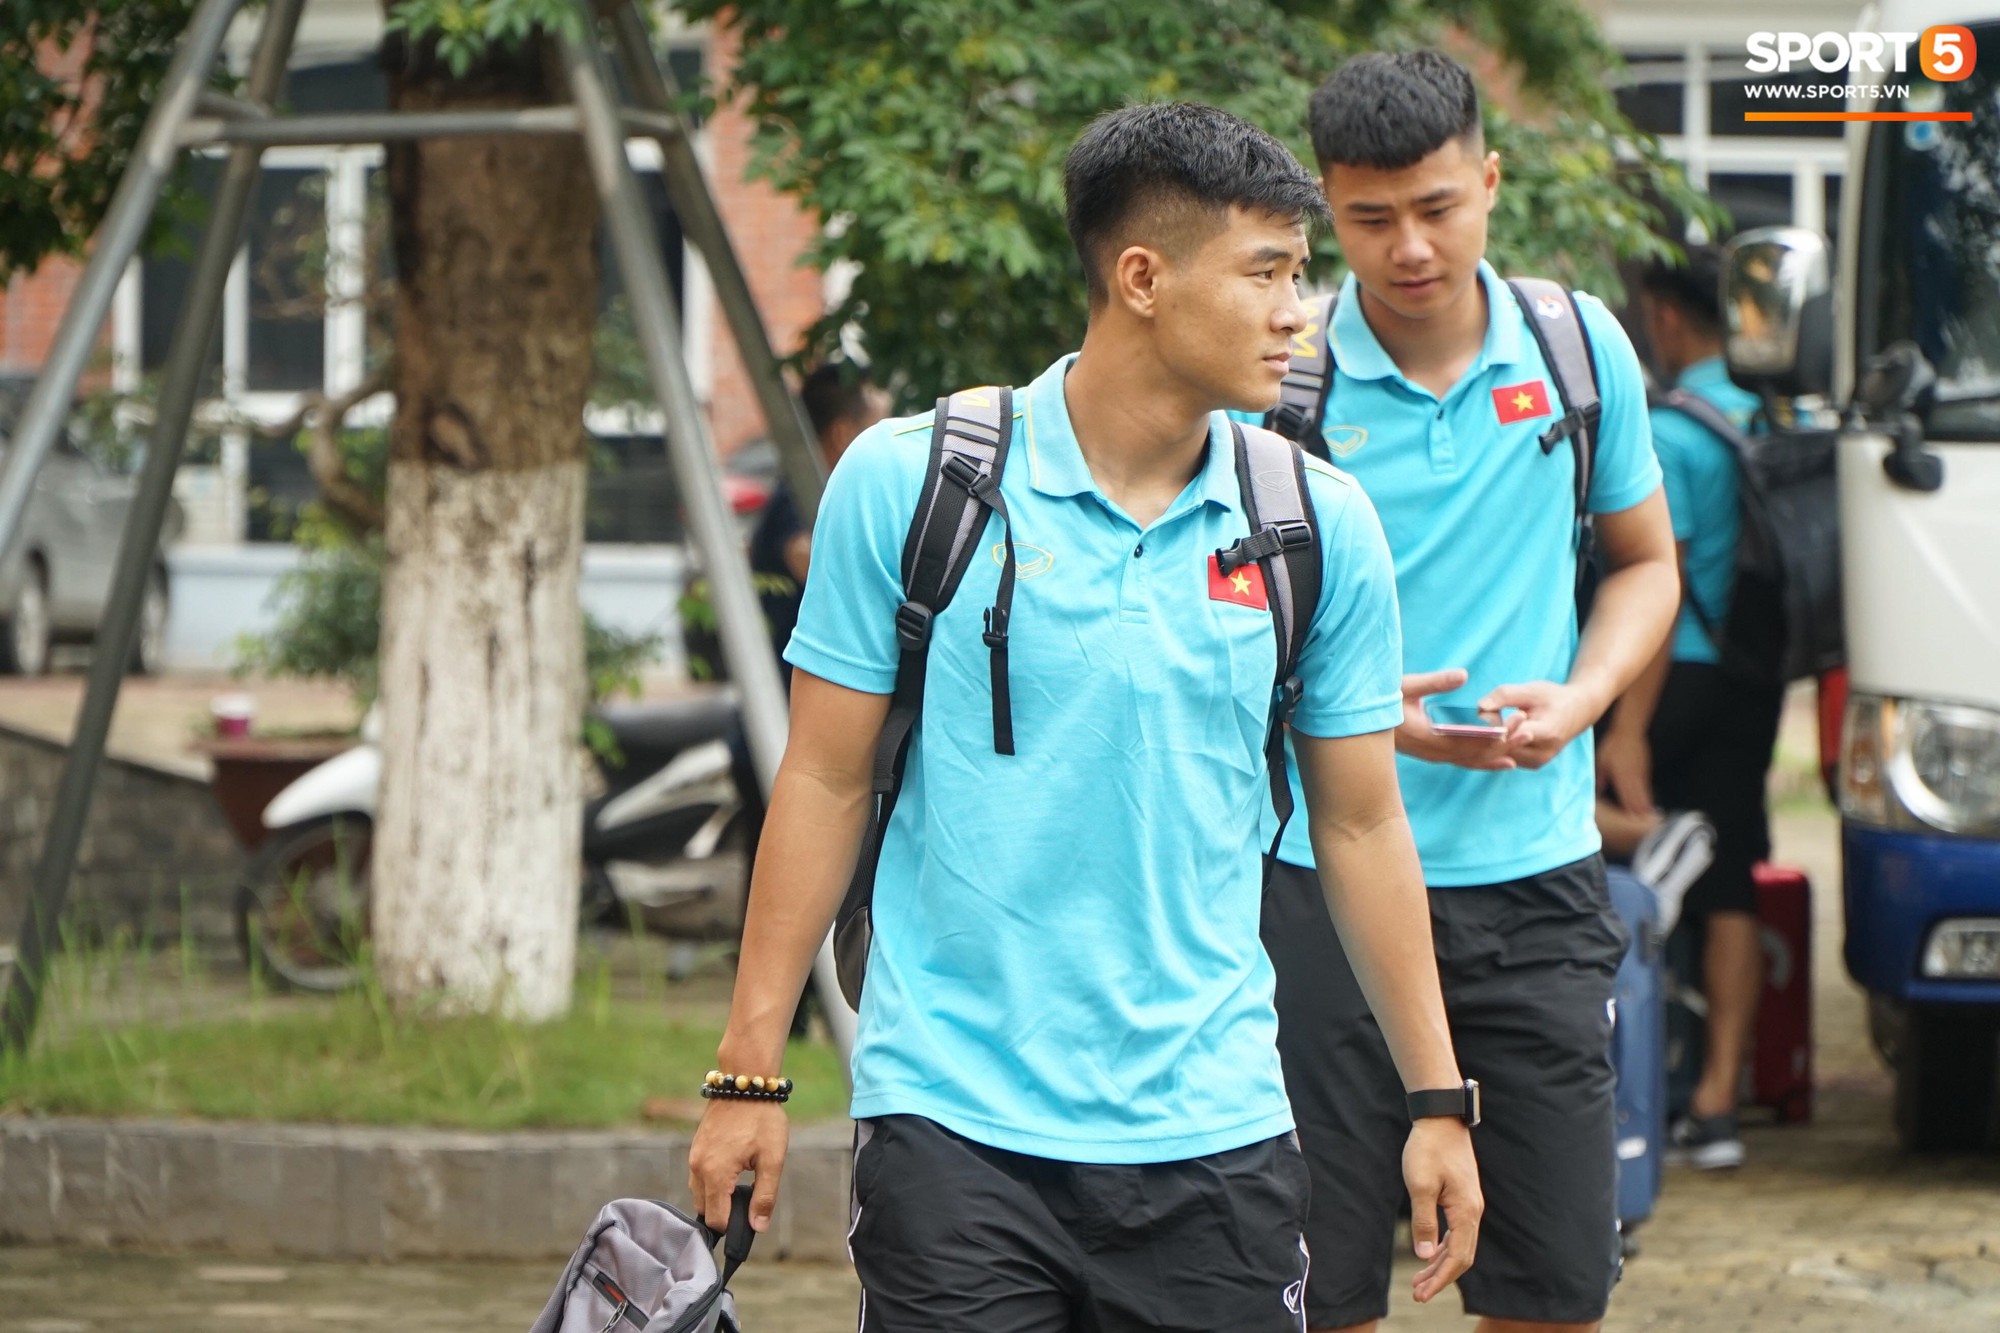 Dàn tuyển thủ Việt Nam bảnh bao hội quân chuẩn bị dự Kings Cup 2019 - Ảnh 12.